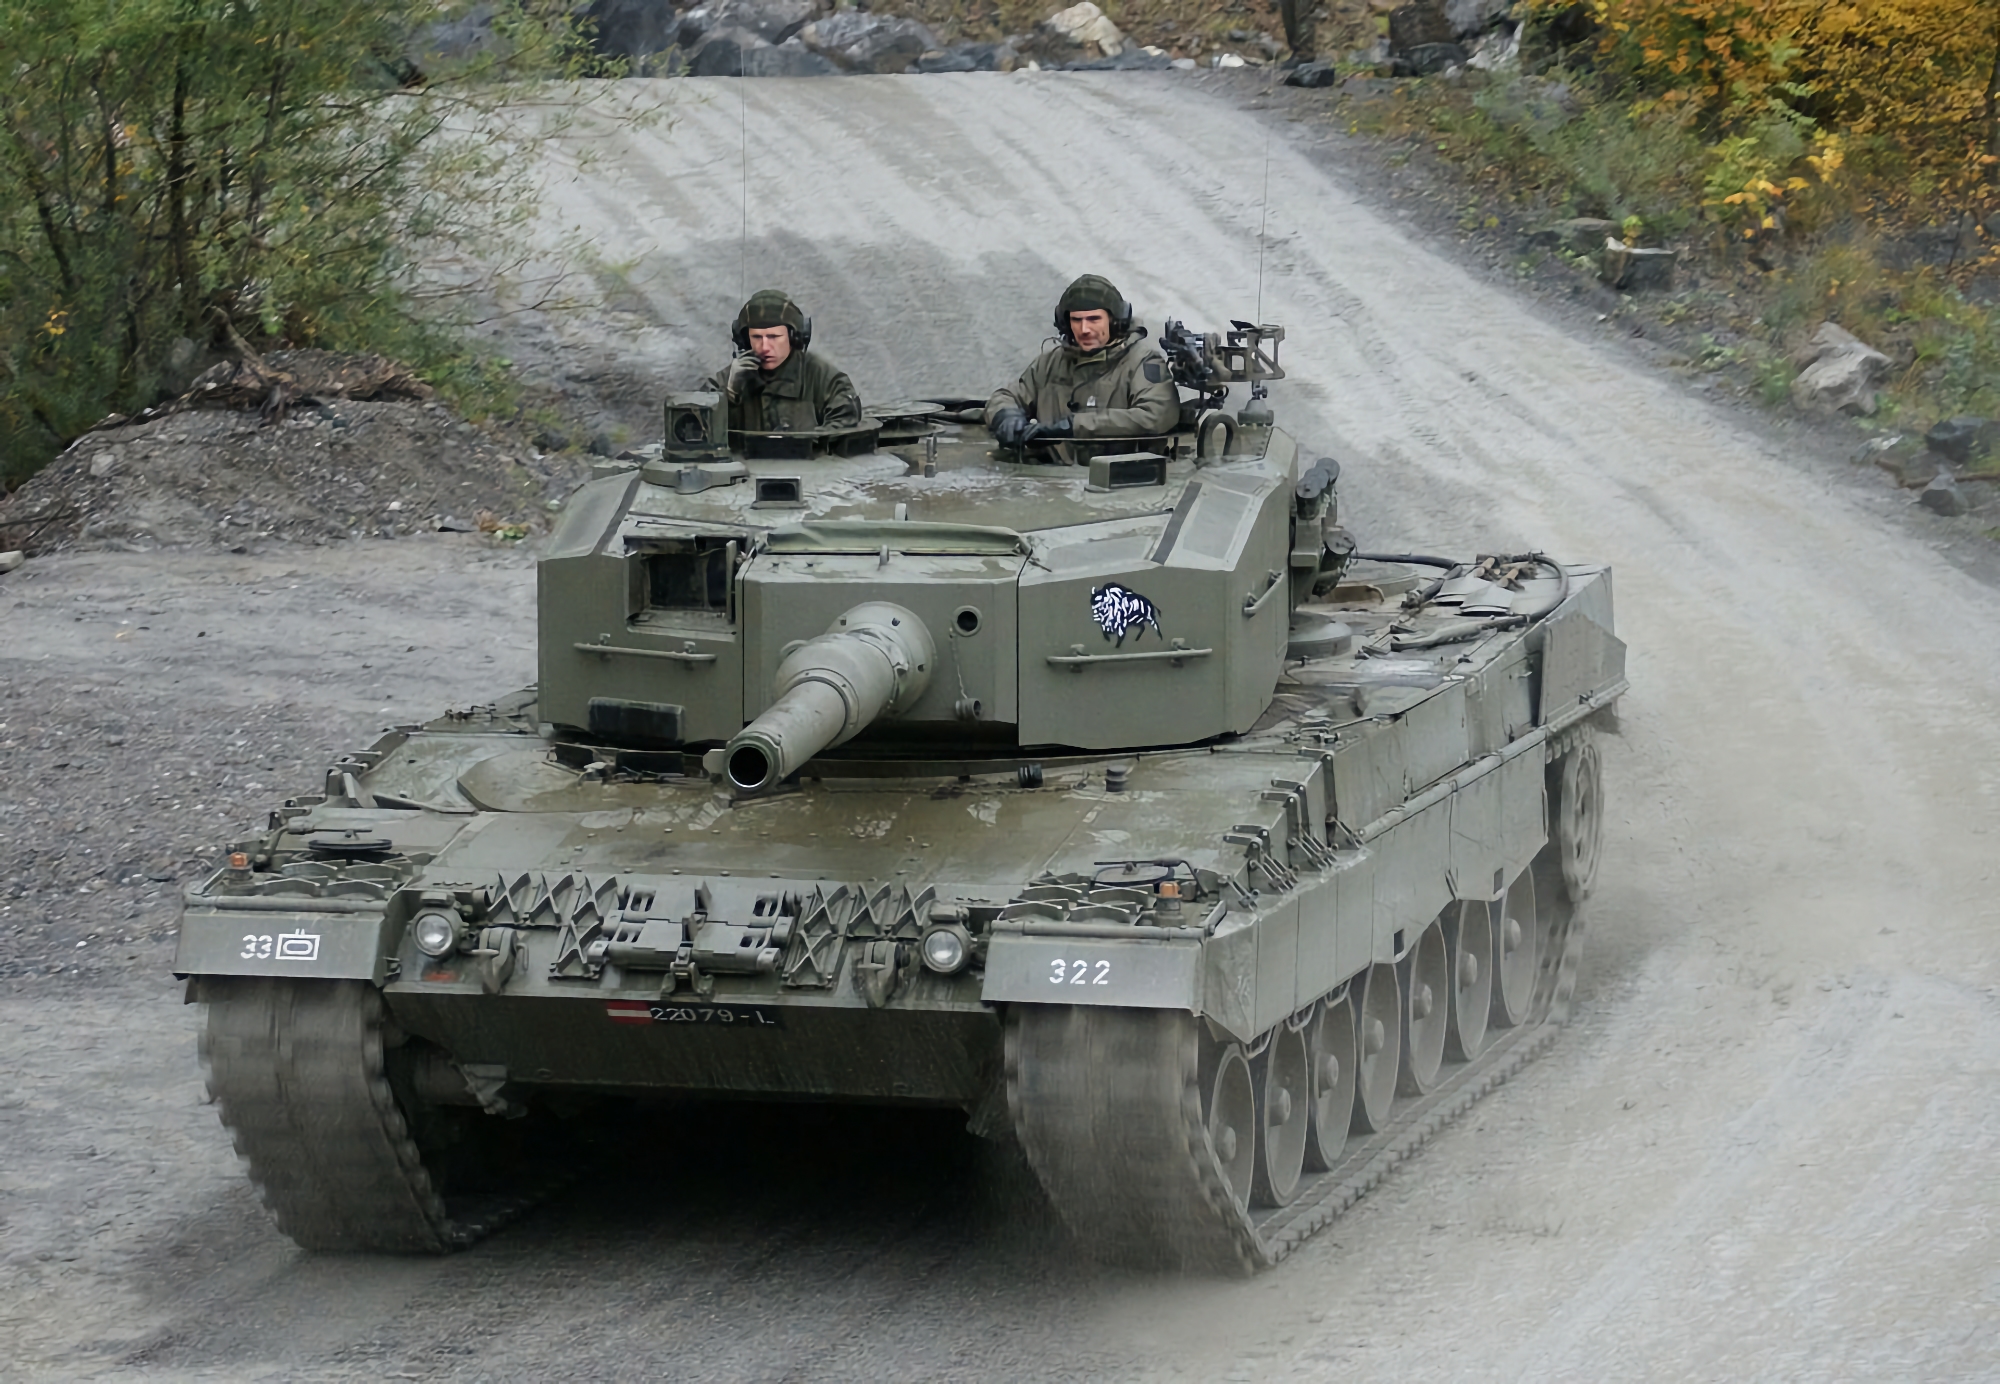 Médias : L'Espagne va transférer jusqu'à six chars Leopard 2A4 à l'Ukraine dans une première étape